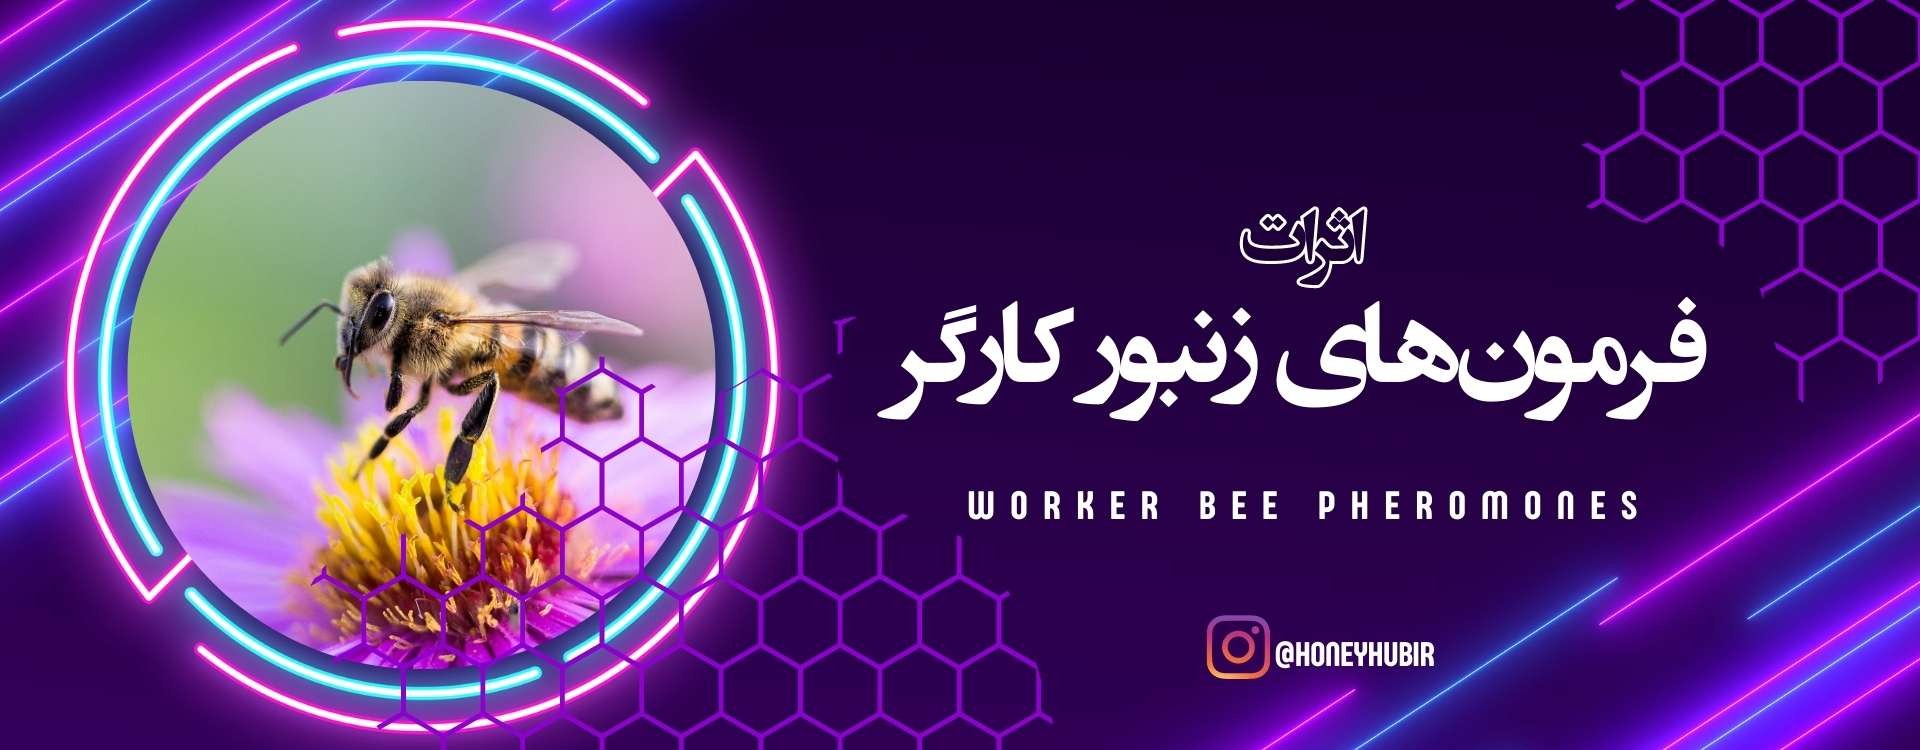 فرمون‌های کارگر زنبور عسل: نقش و عملکرد